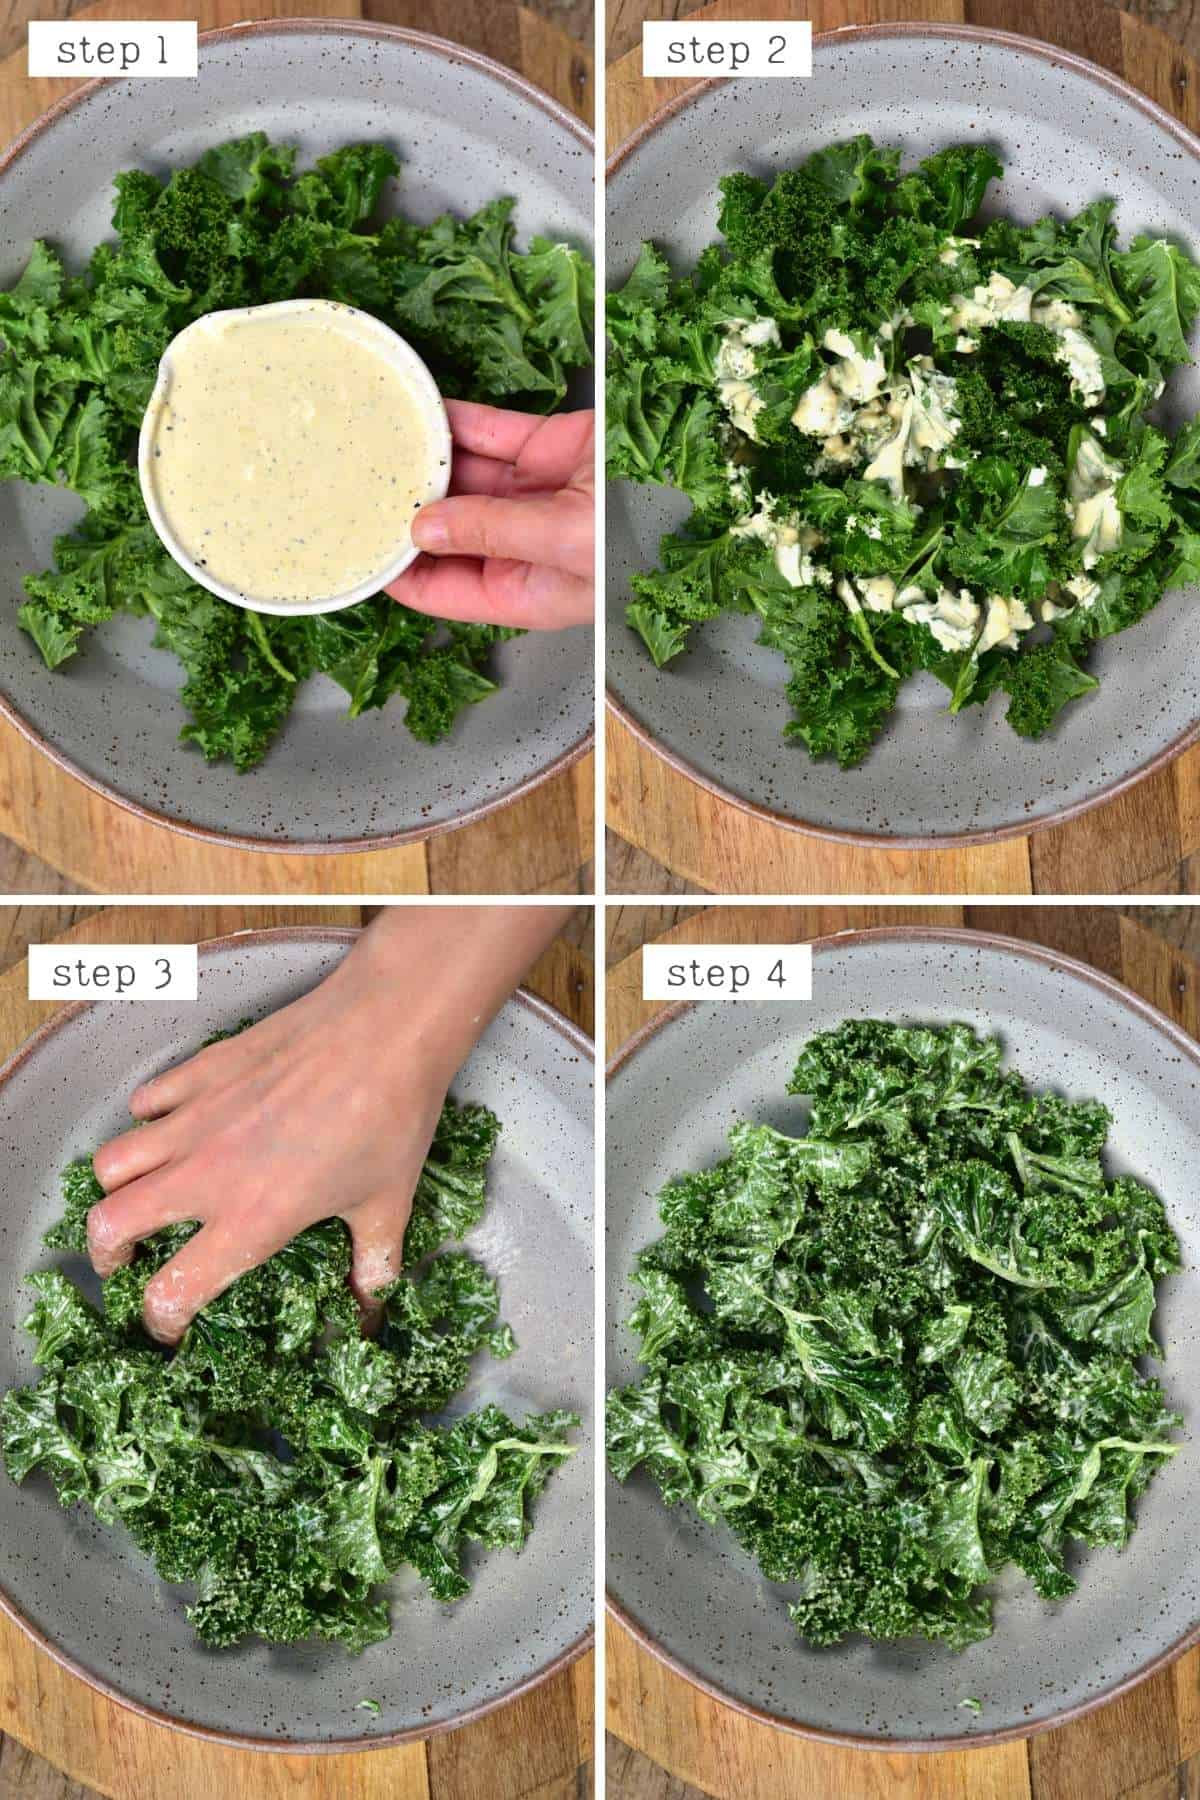 Steps for massaging kale with salad dressing